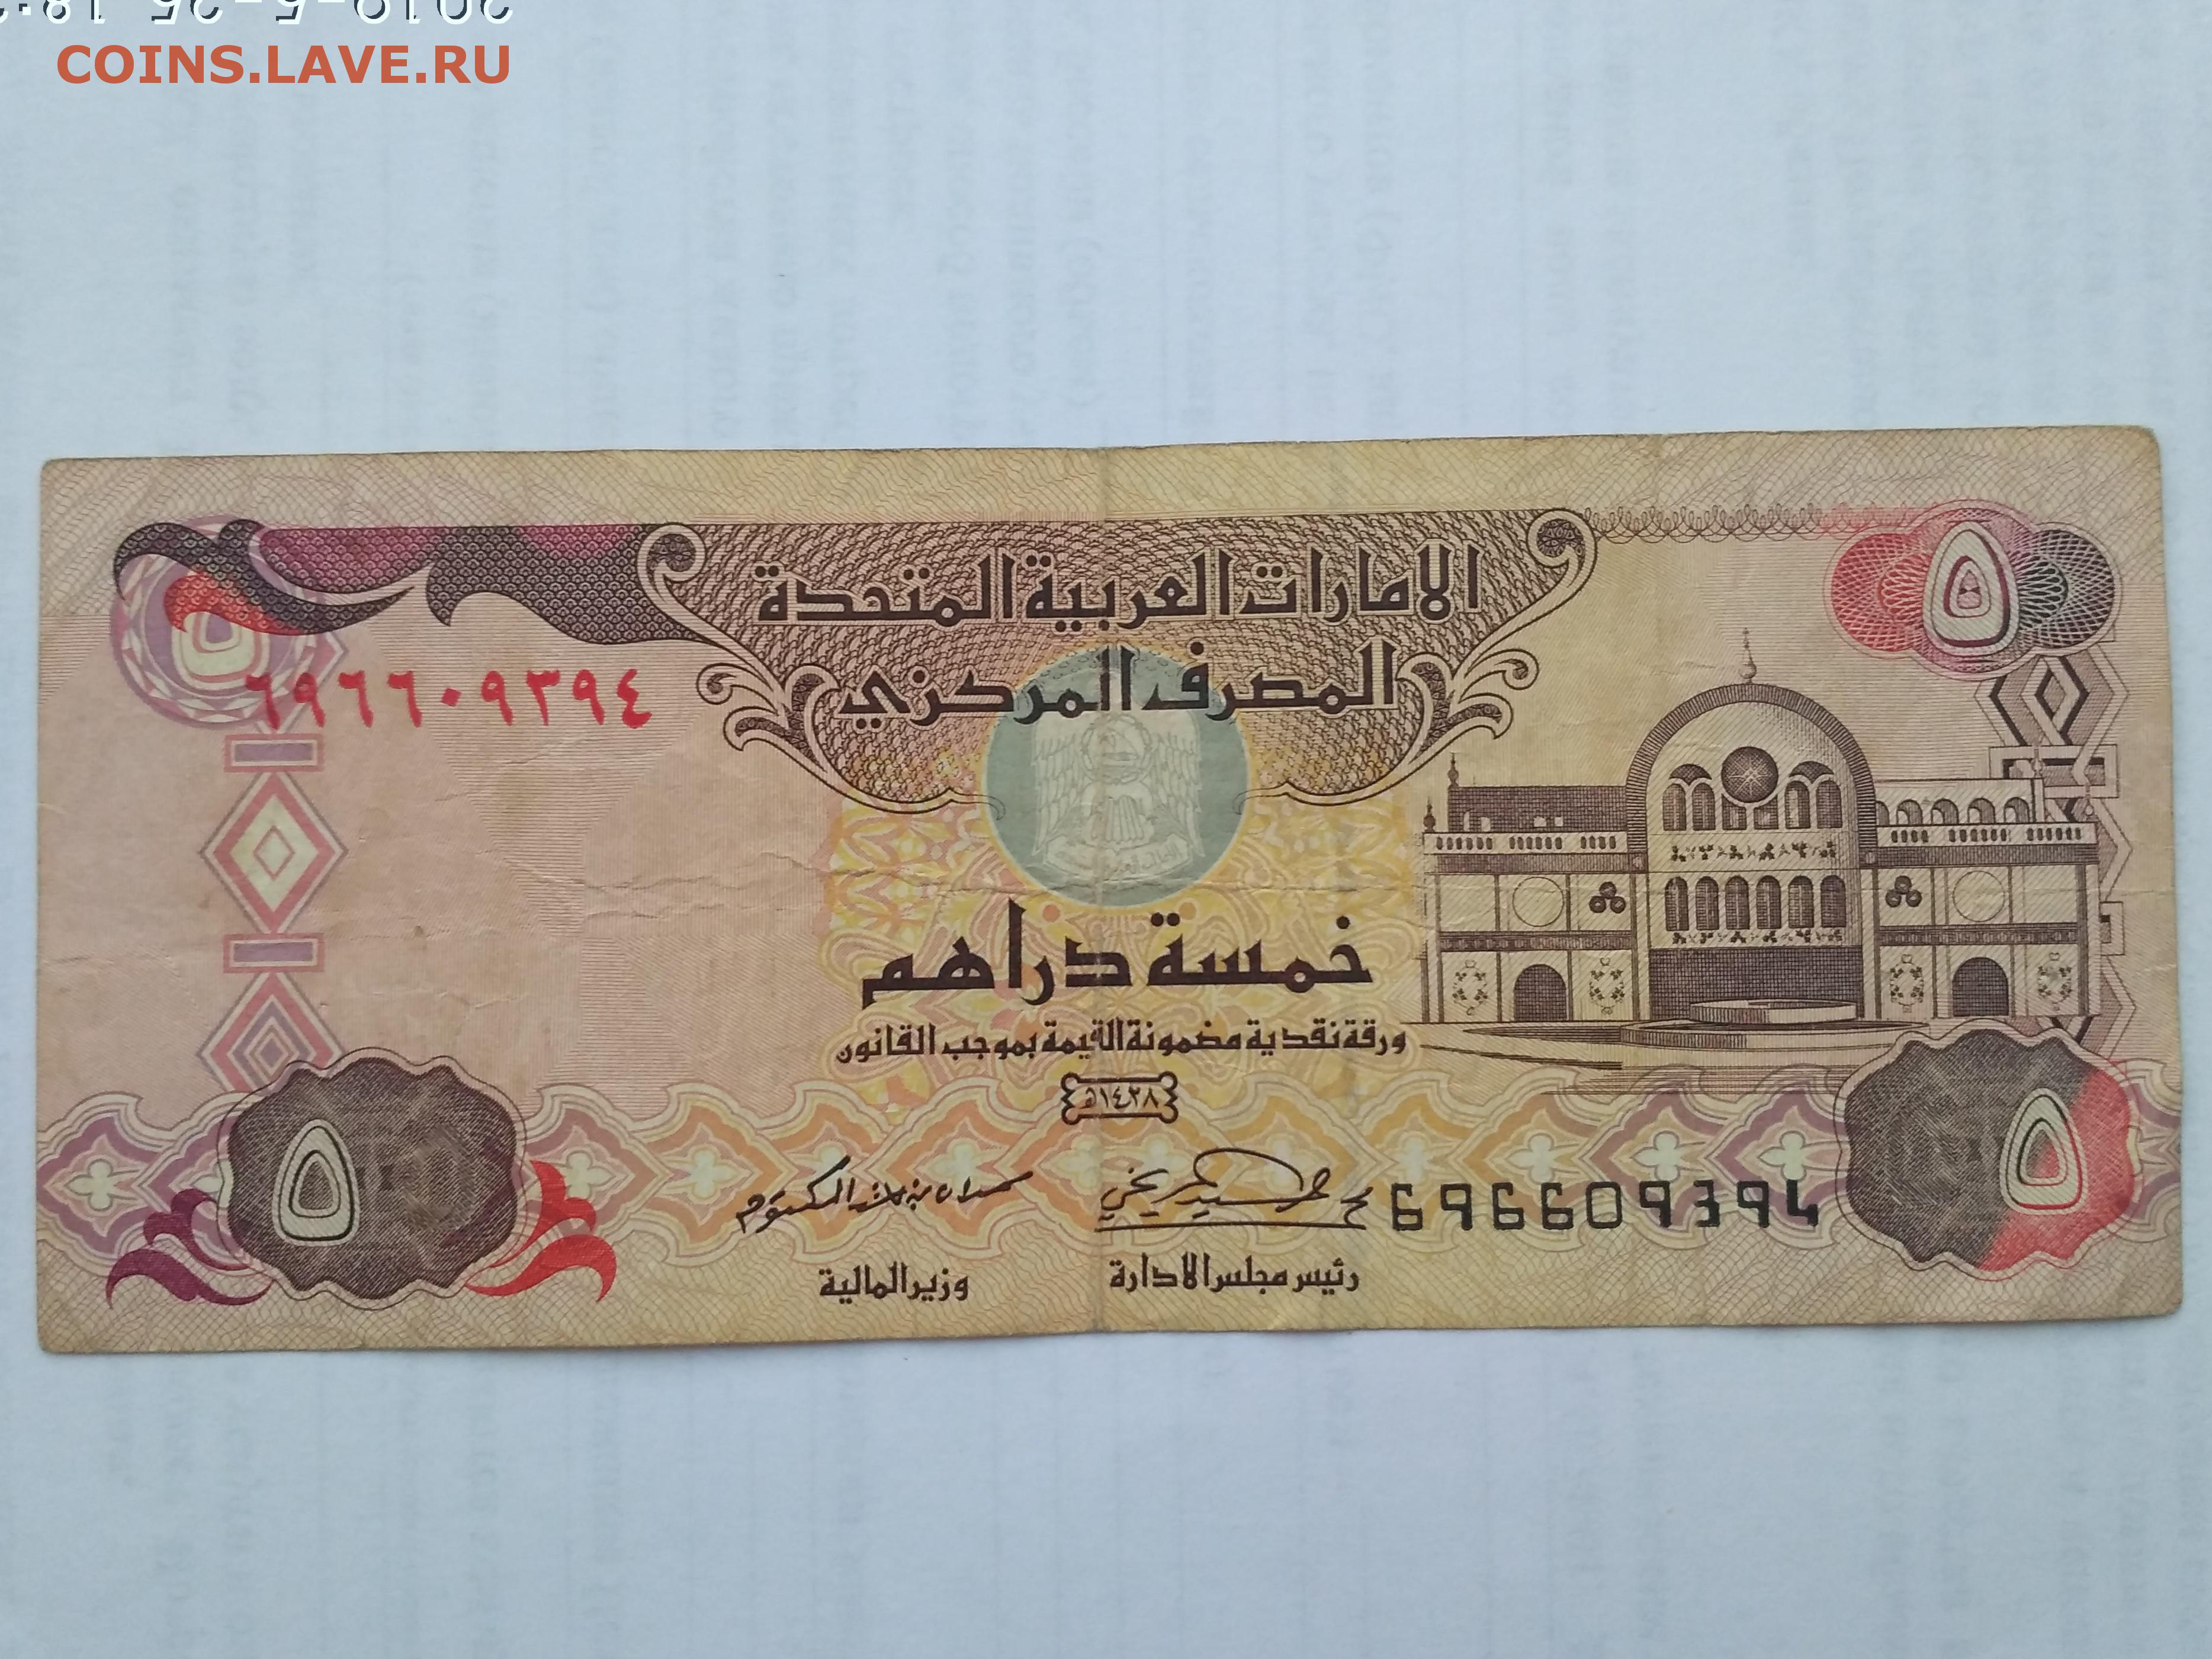 Купить дирхамы в нижнем. Боны арабские эмираты 5 дирхам. Банкнота ОАЭ 5 дирхам. Дирхамы с подписью. ОАЭ: 5 дирхамов 2004-09 г.Бонна фото.